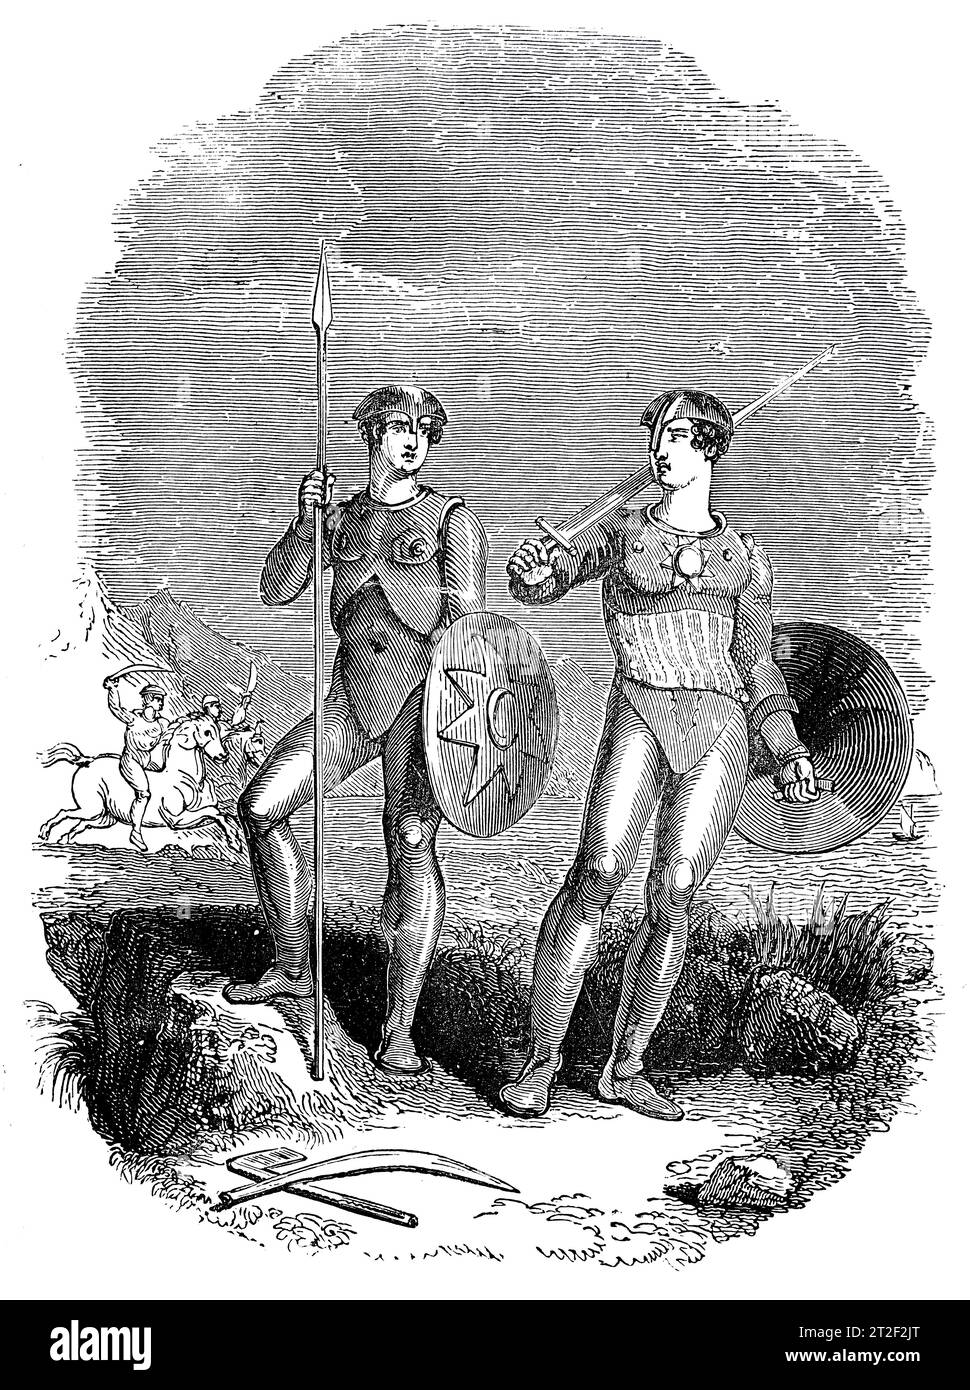 Armas y trajes de las tribus de las costas occidentales del Báltico. Ilustración en blanco y negro de la 'Vieja Inglaterra' publicada por James Sangster en 1860. Foto de stock